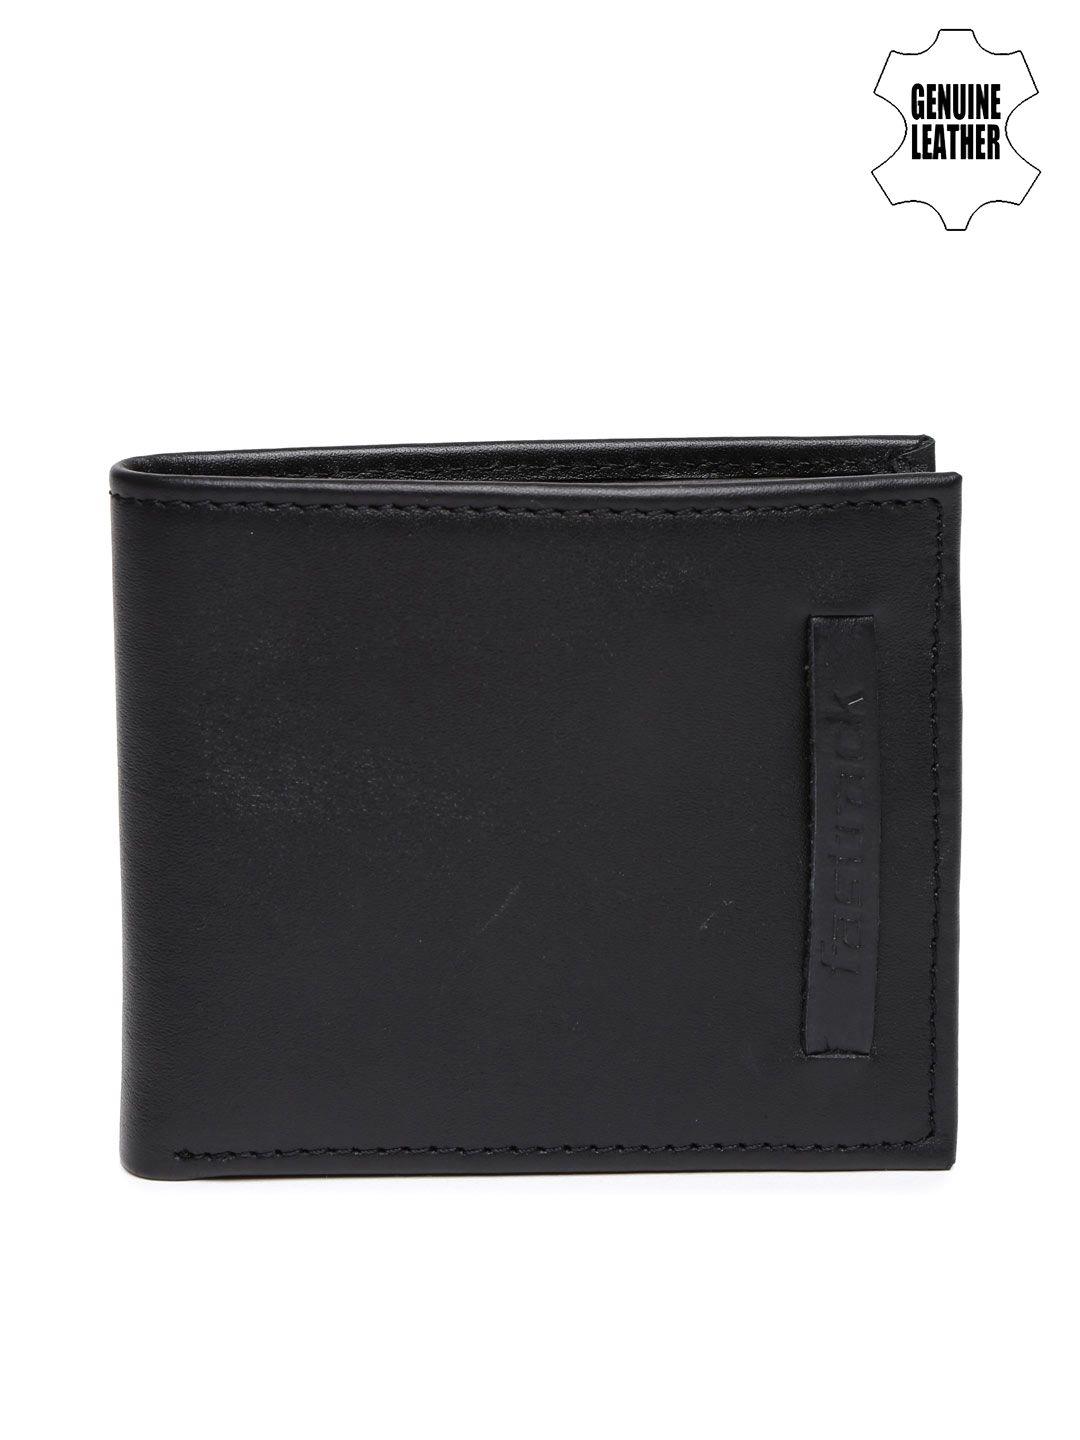 fastrack men black leather wallet